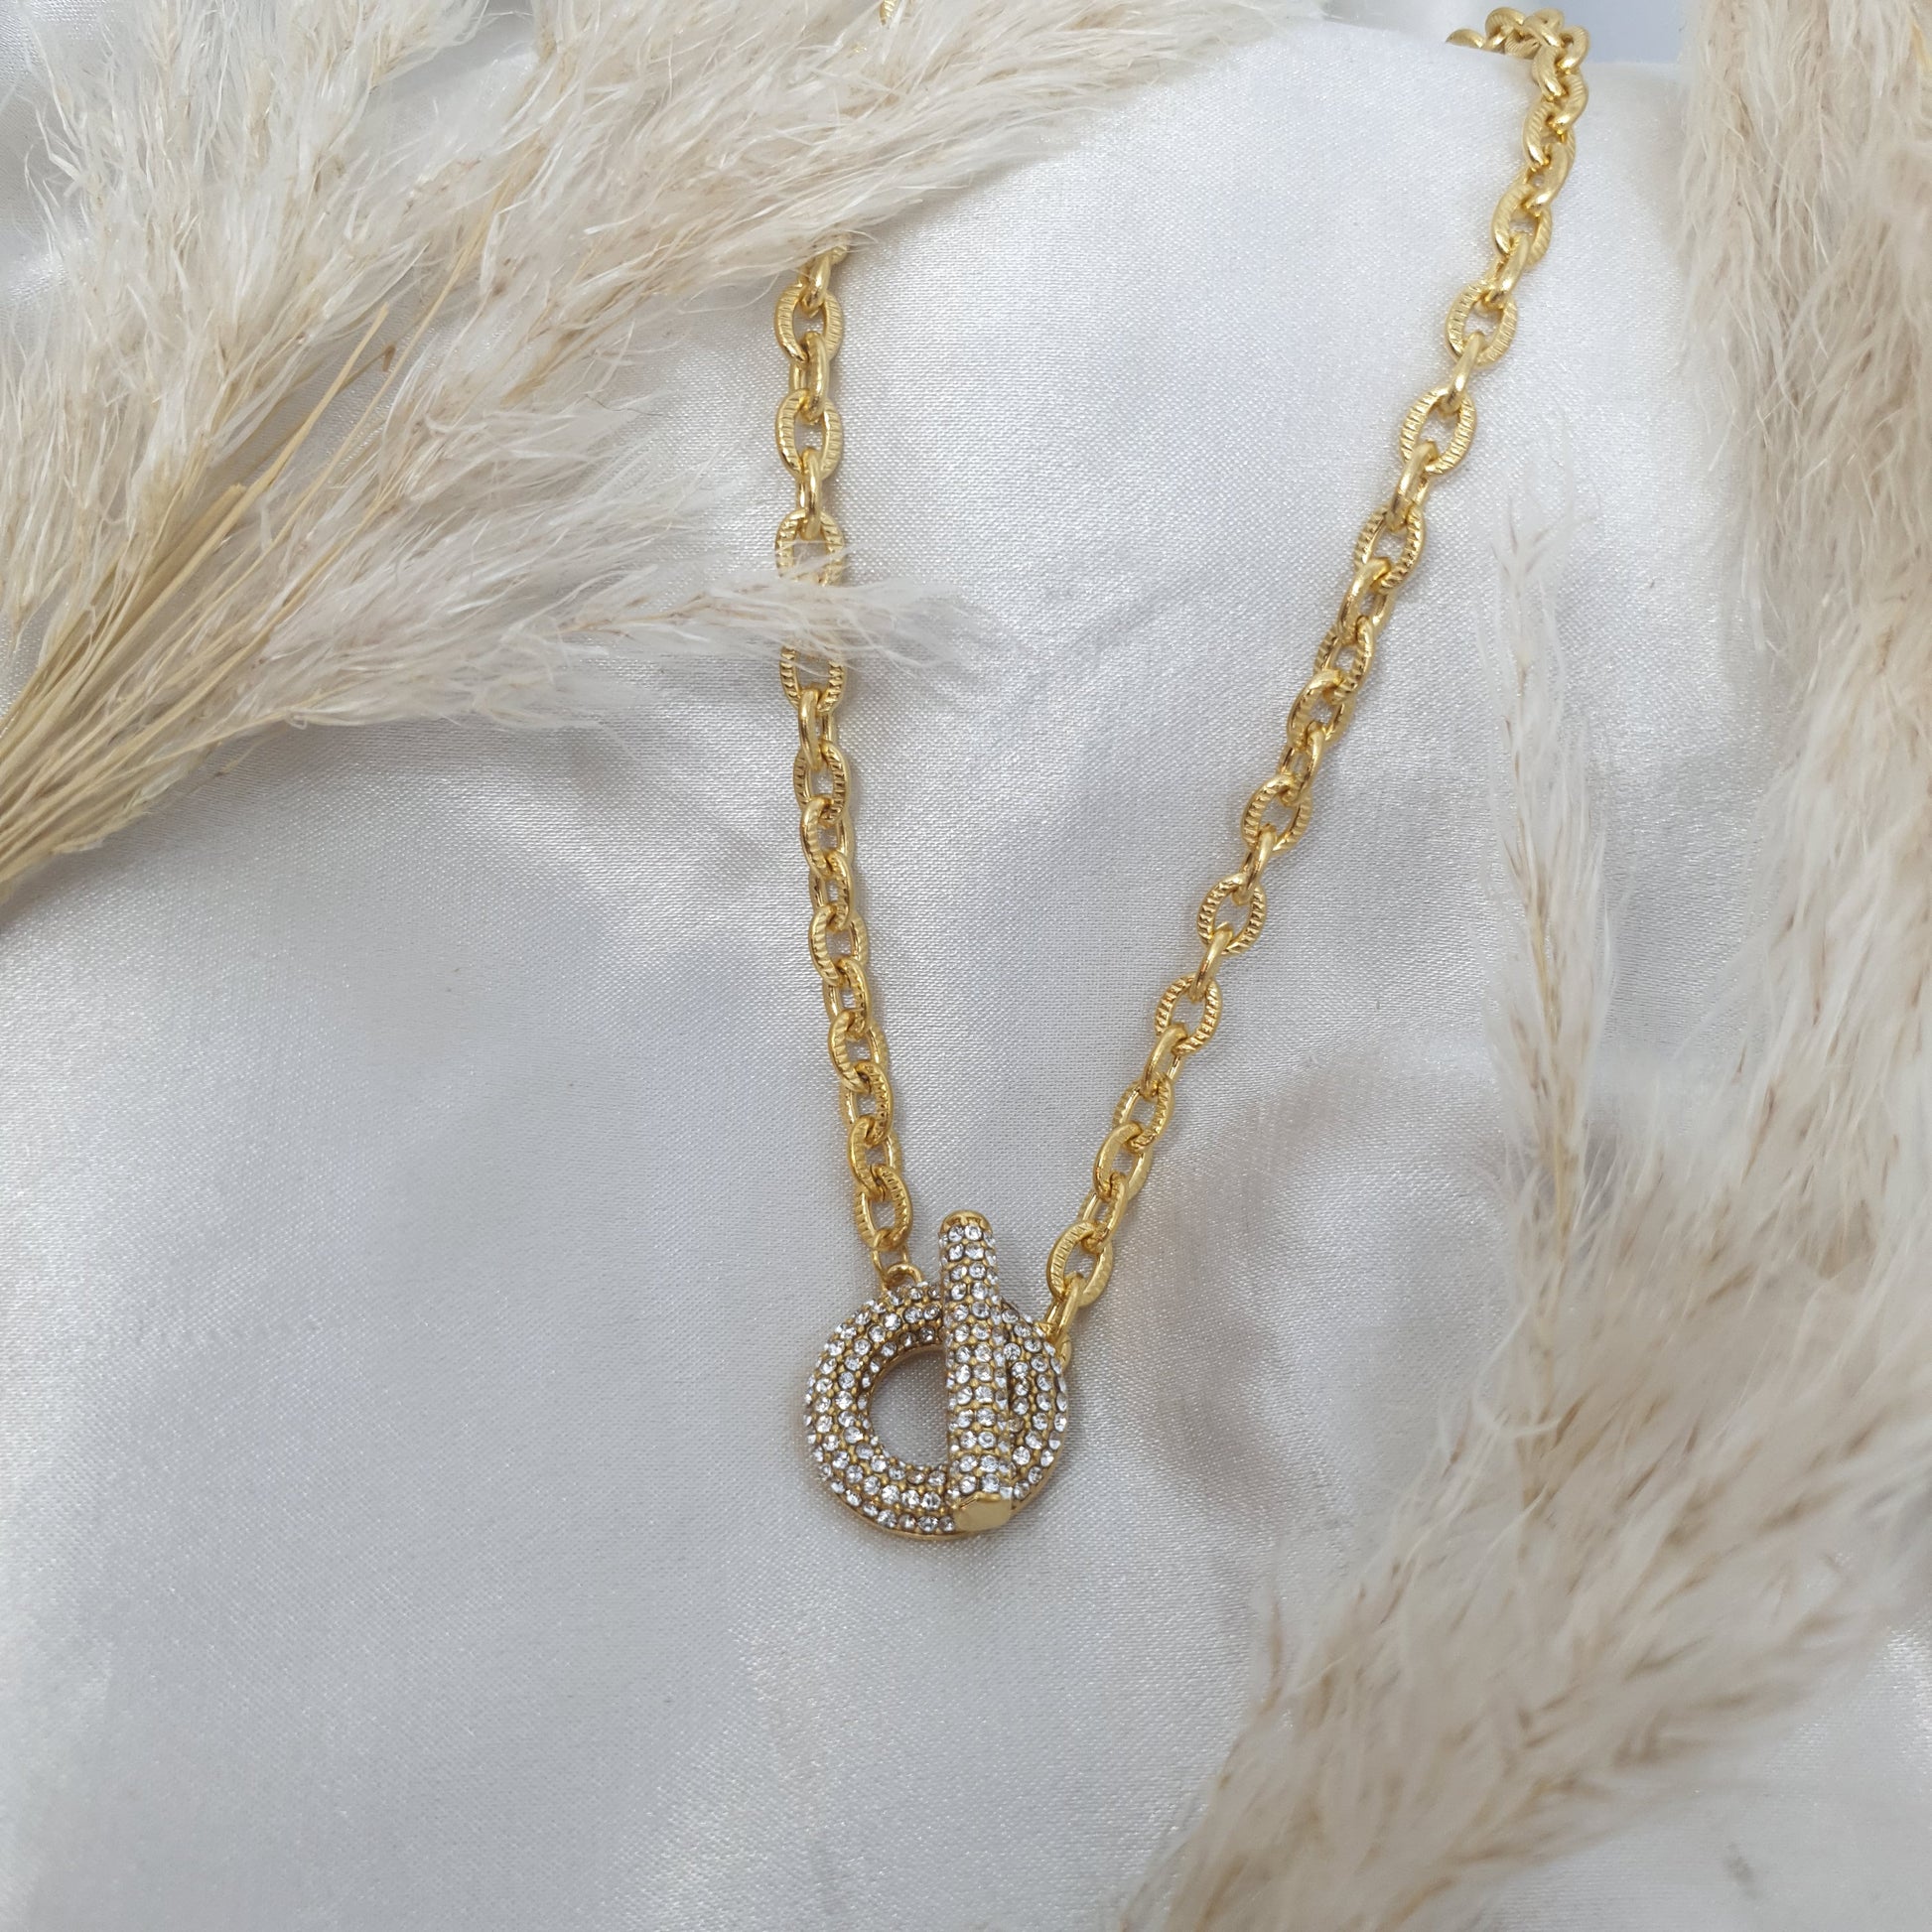 Collier circulaire doré en chaîne et strass argenté diamant HARMONIE RéussiteActif